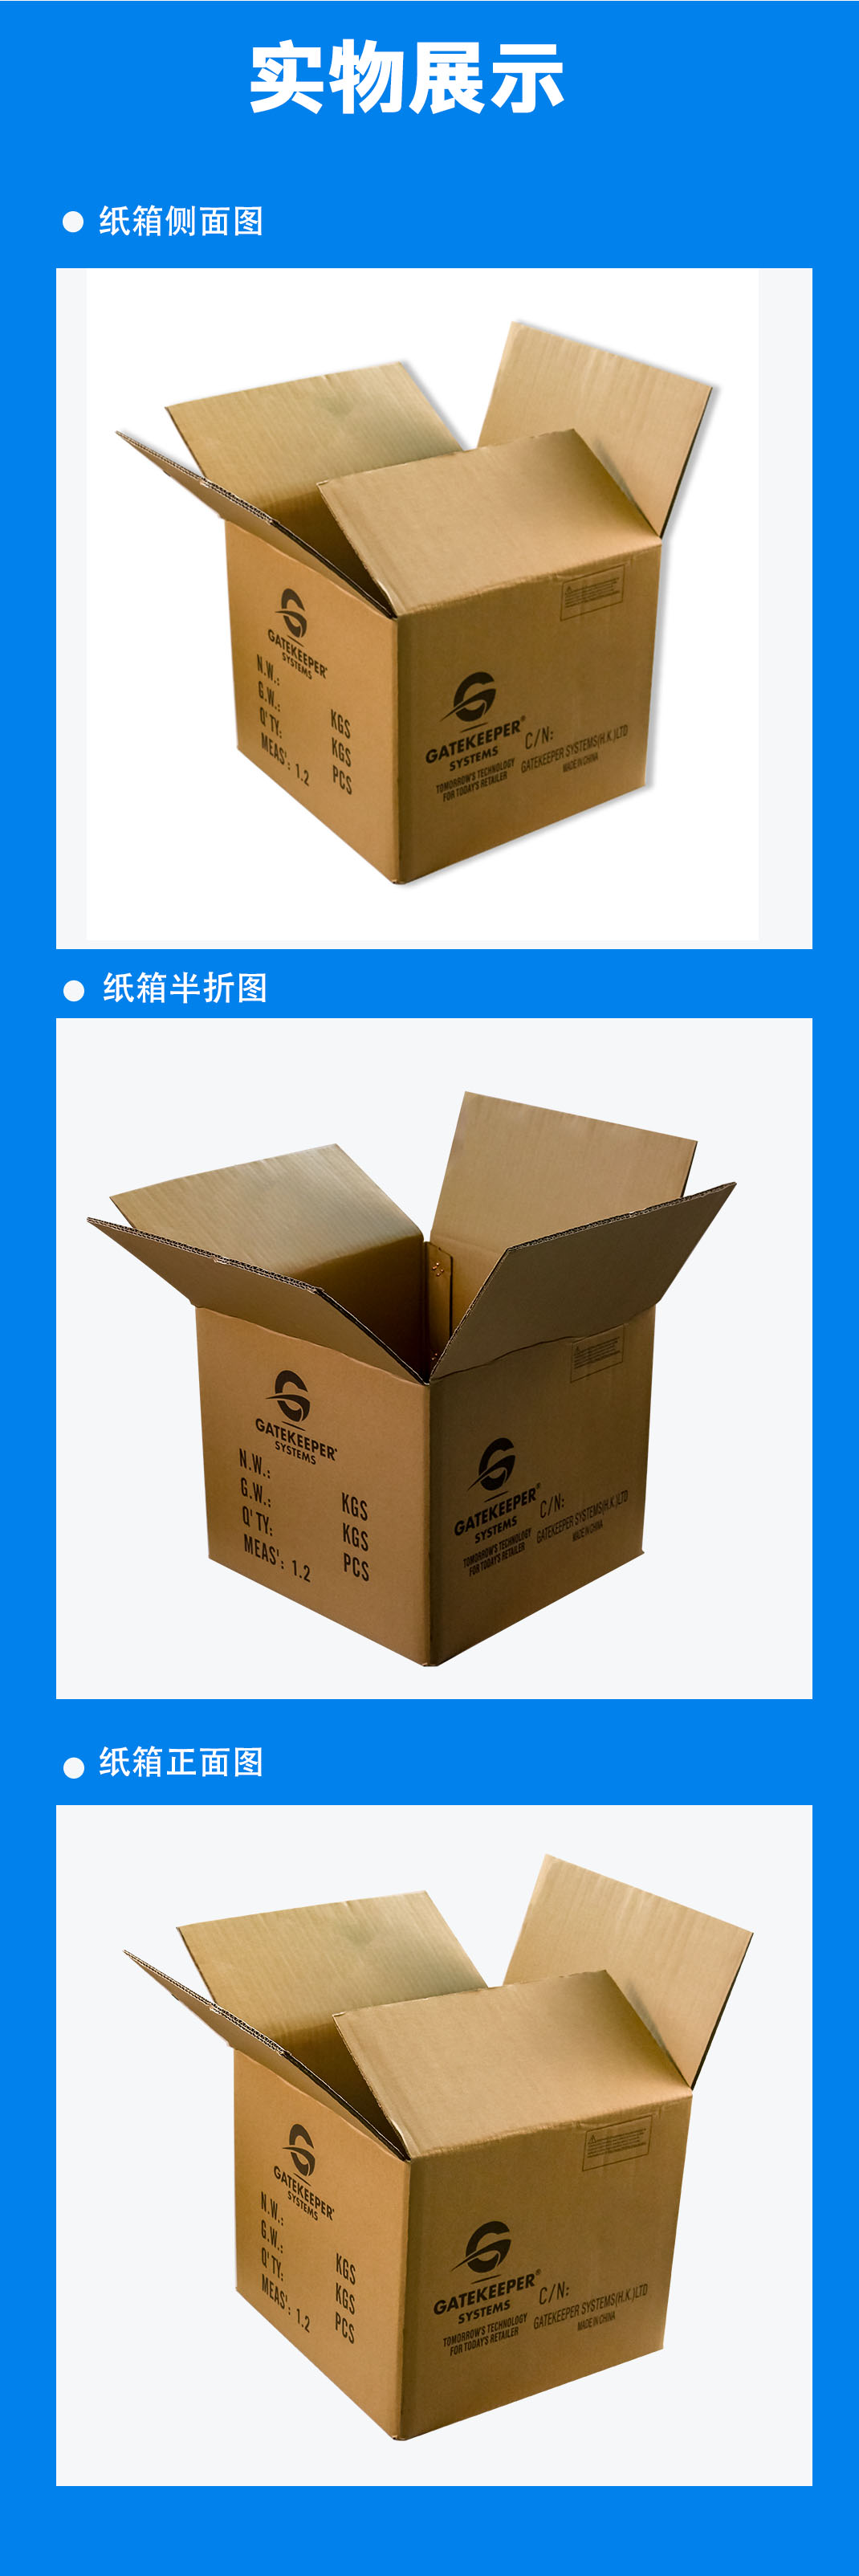 深圳纸箱常用的印刷分类